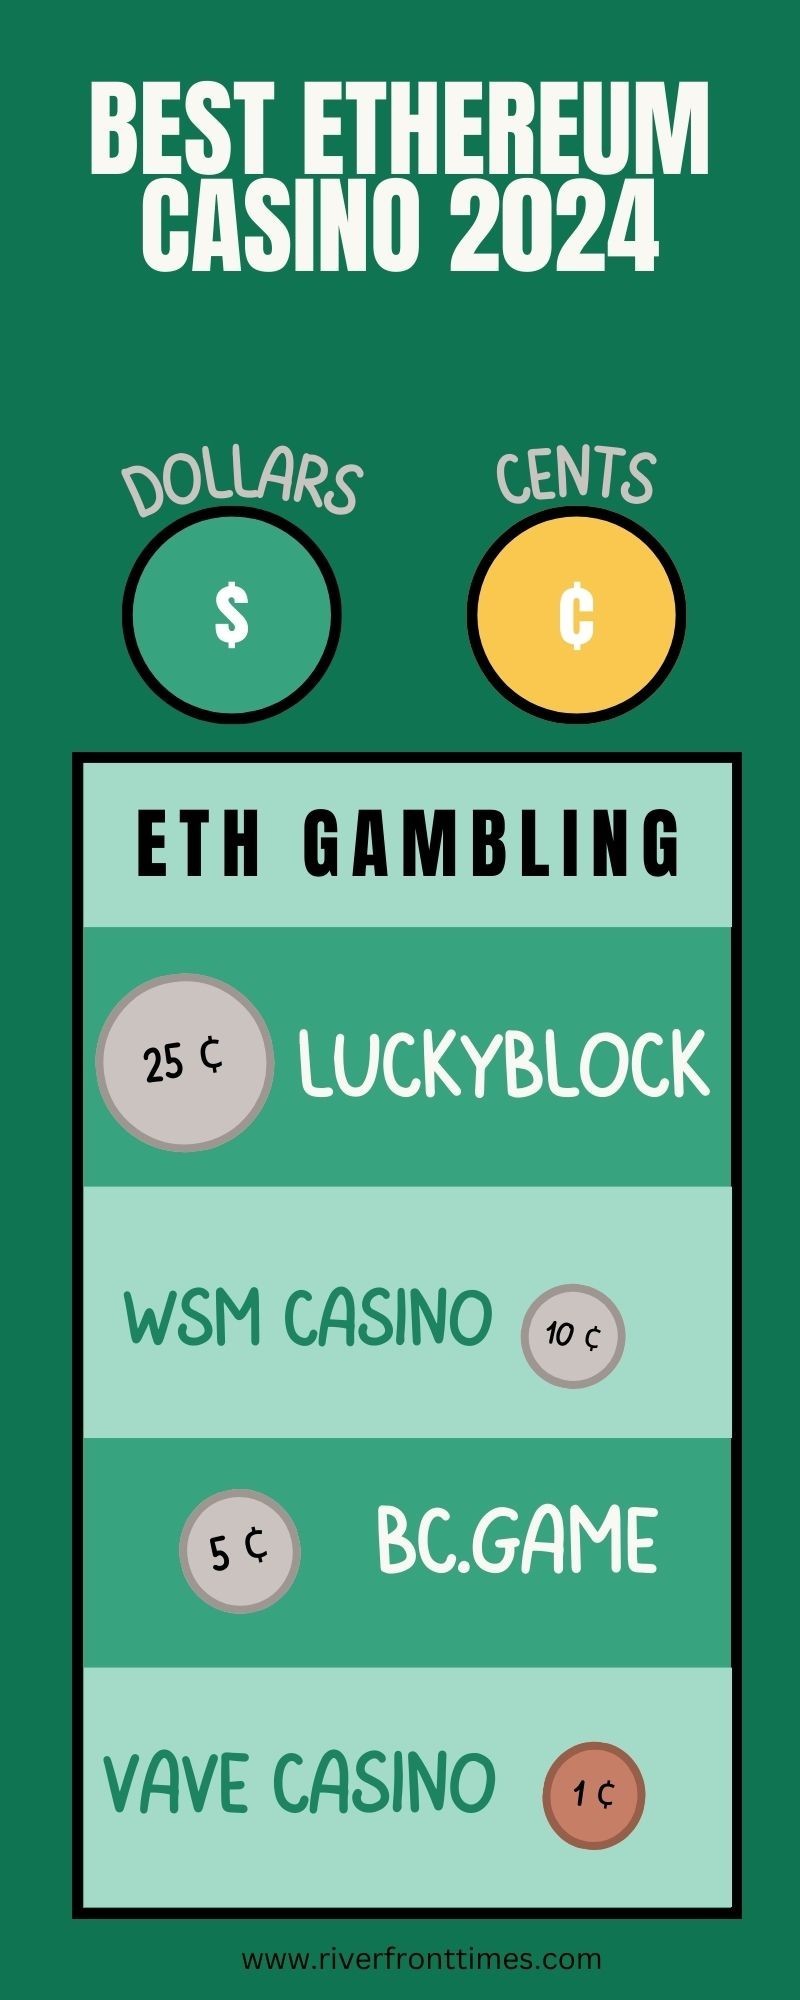 Best Ethereum Casino 2024